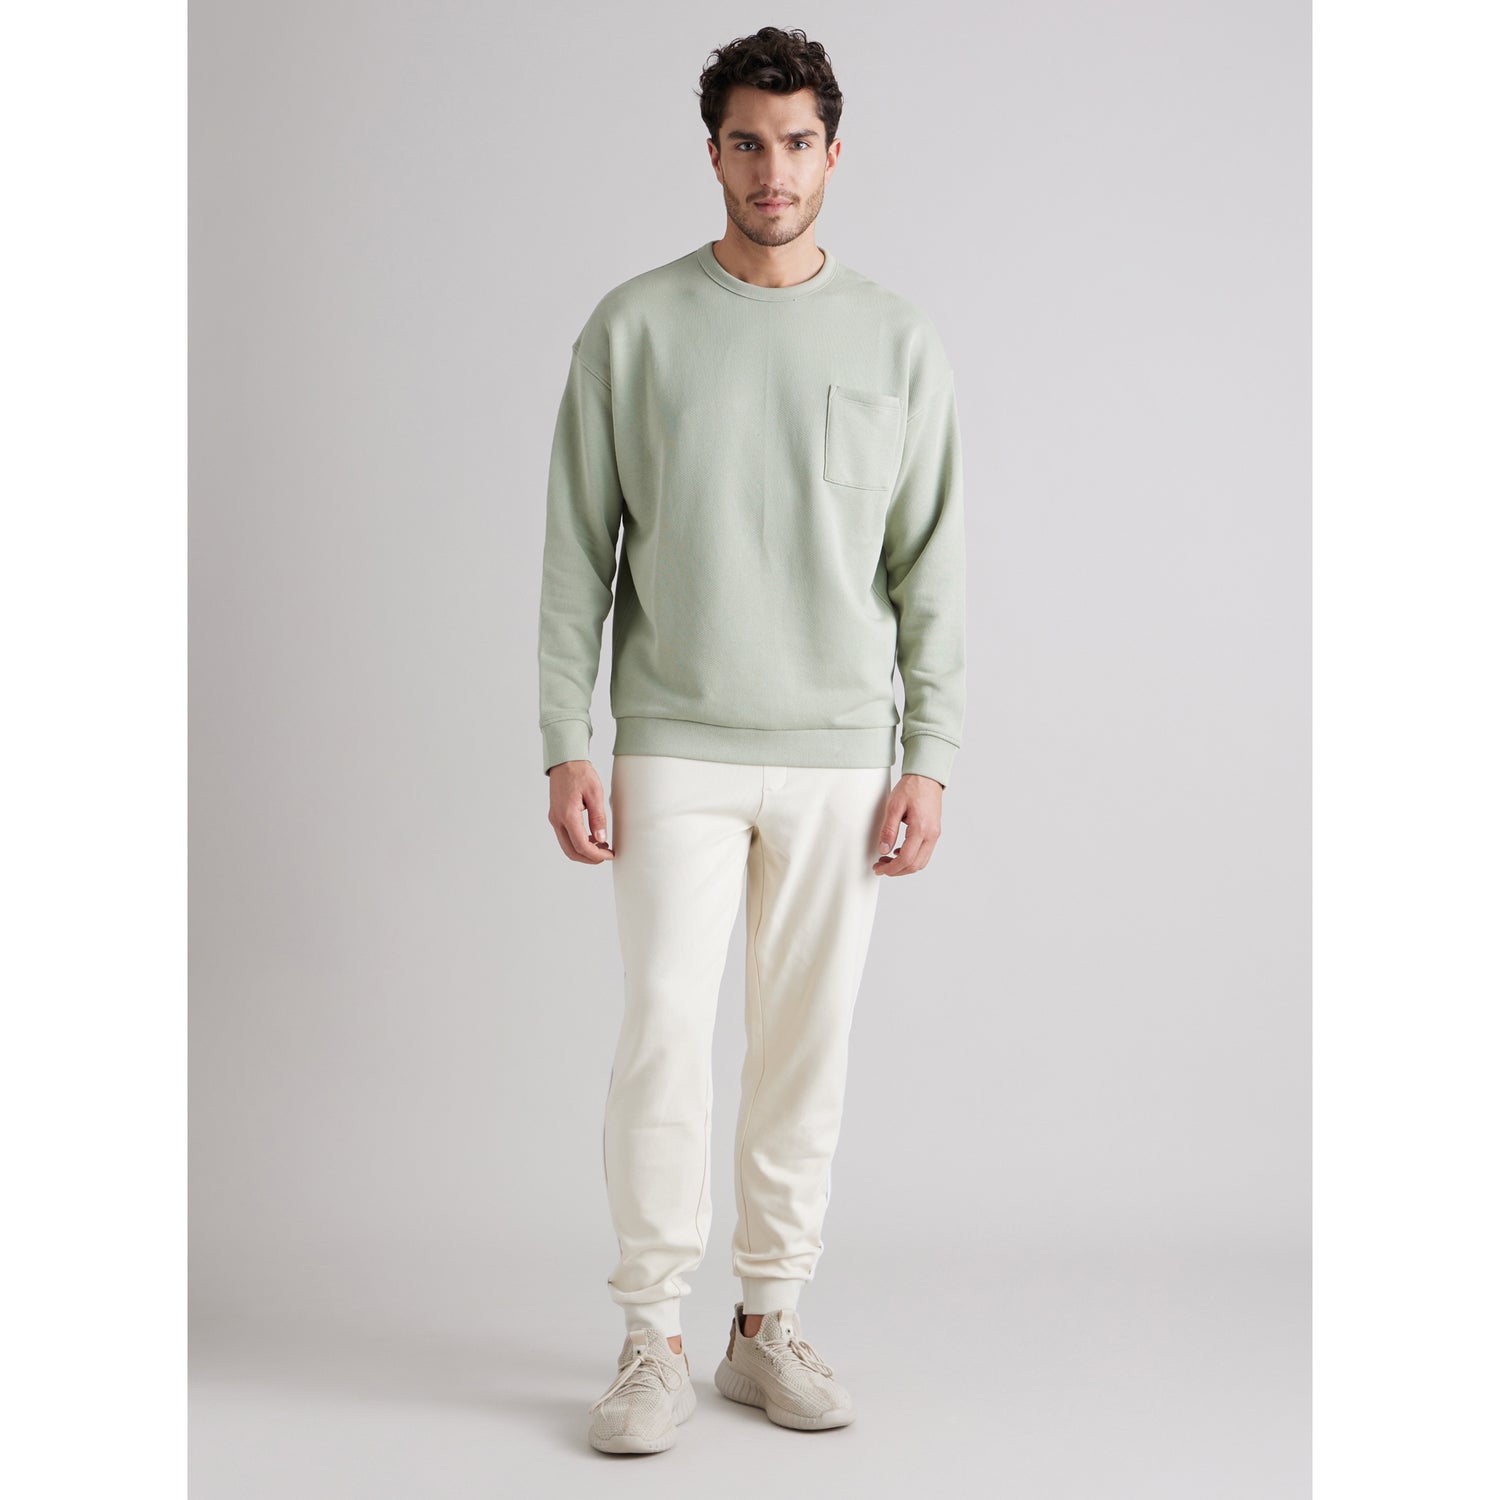 Green Solid Round Neck Cotton Sweatshirt (BESWEATBOX)